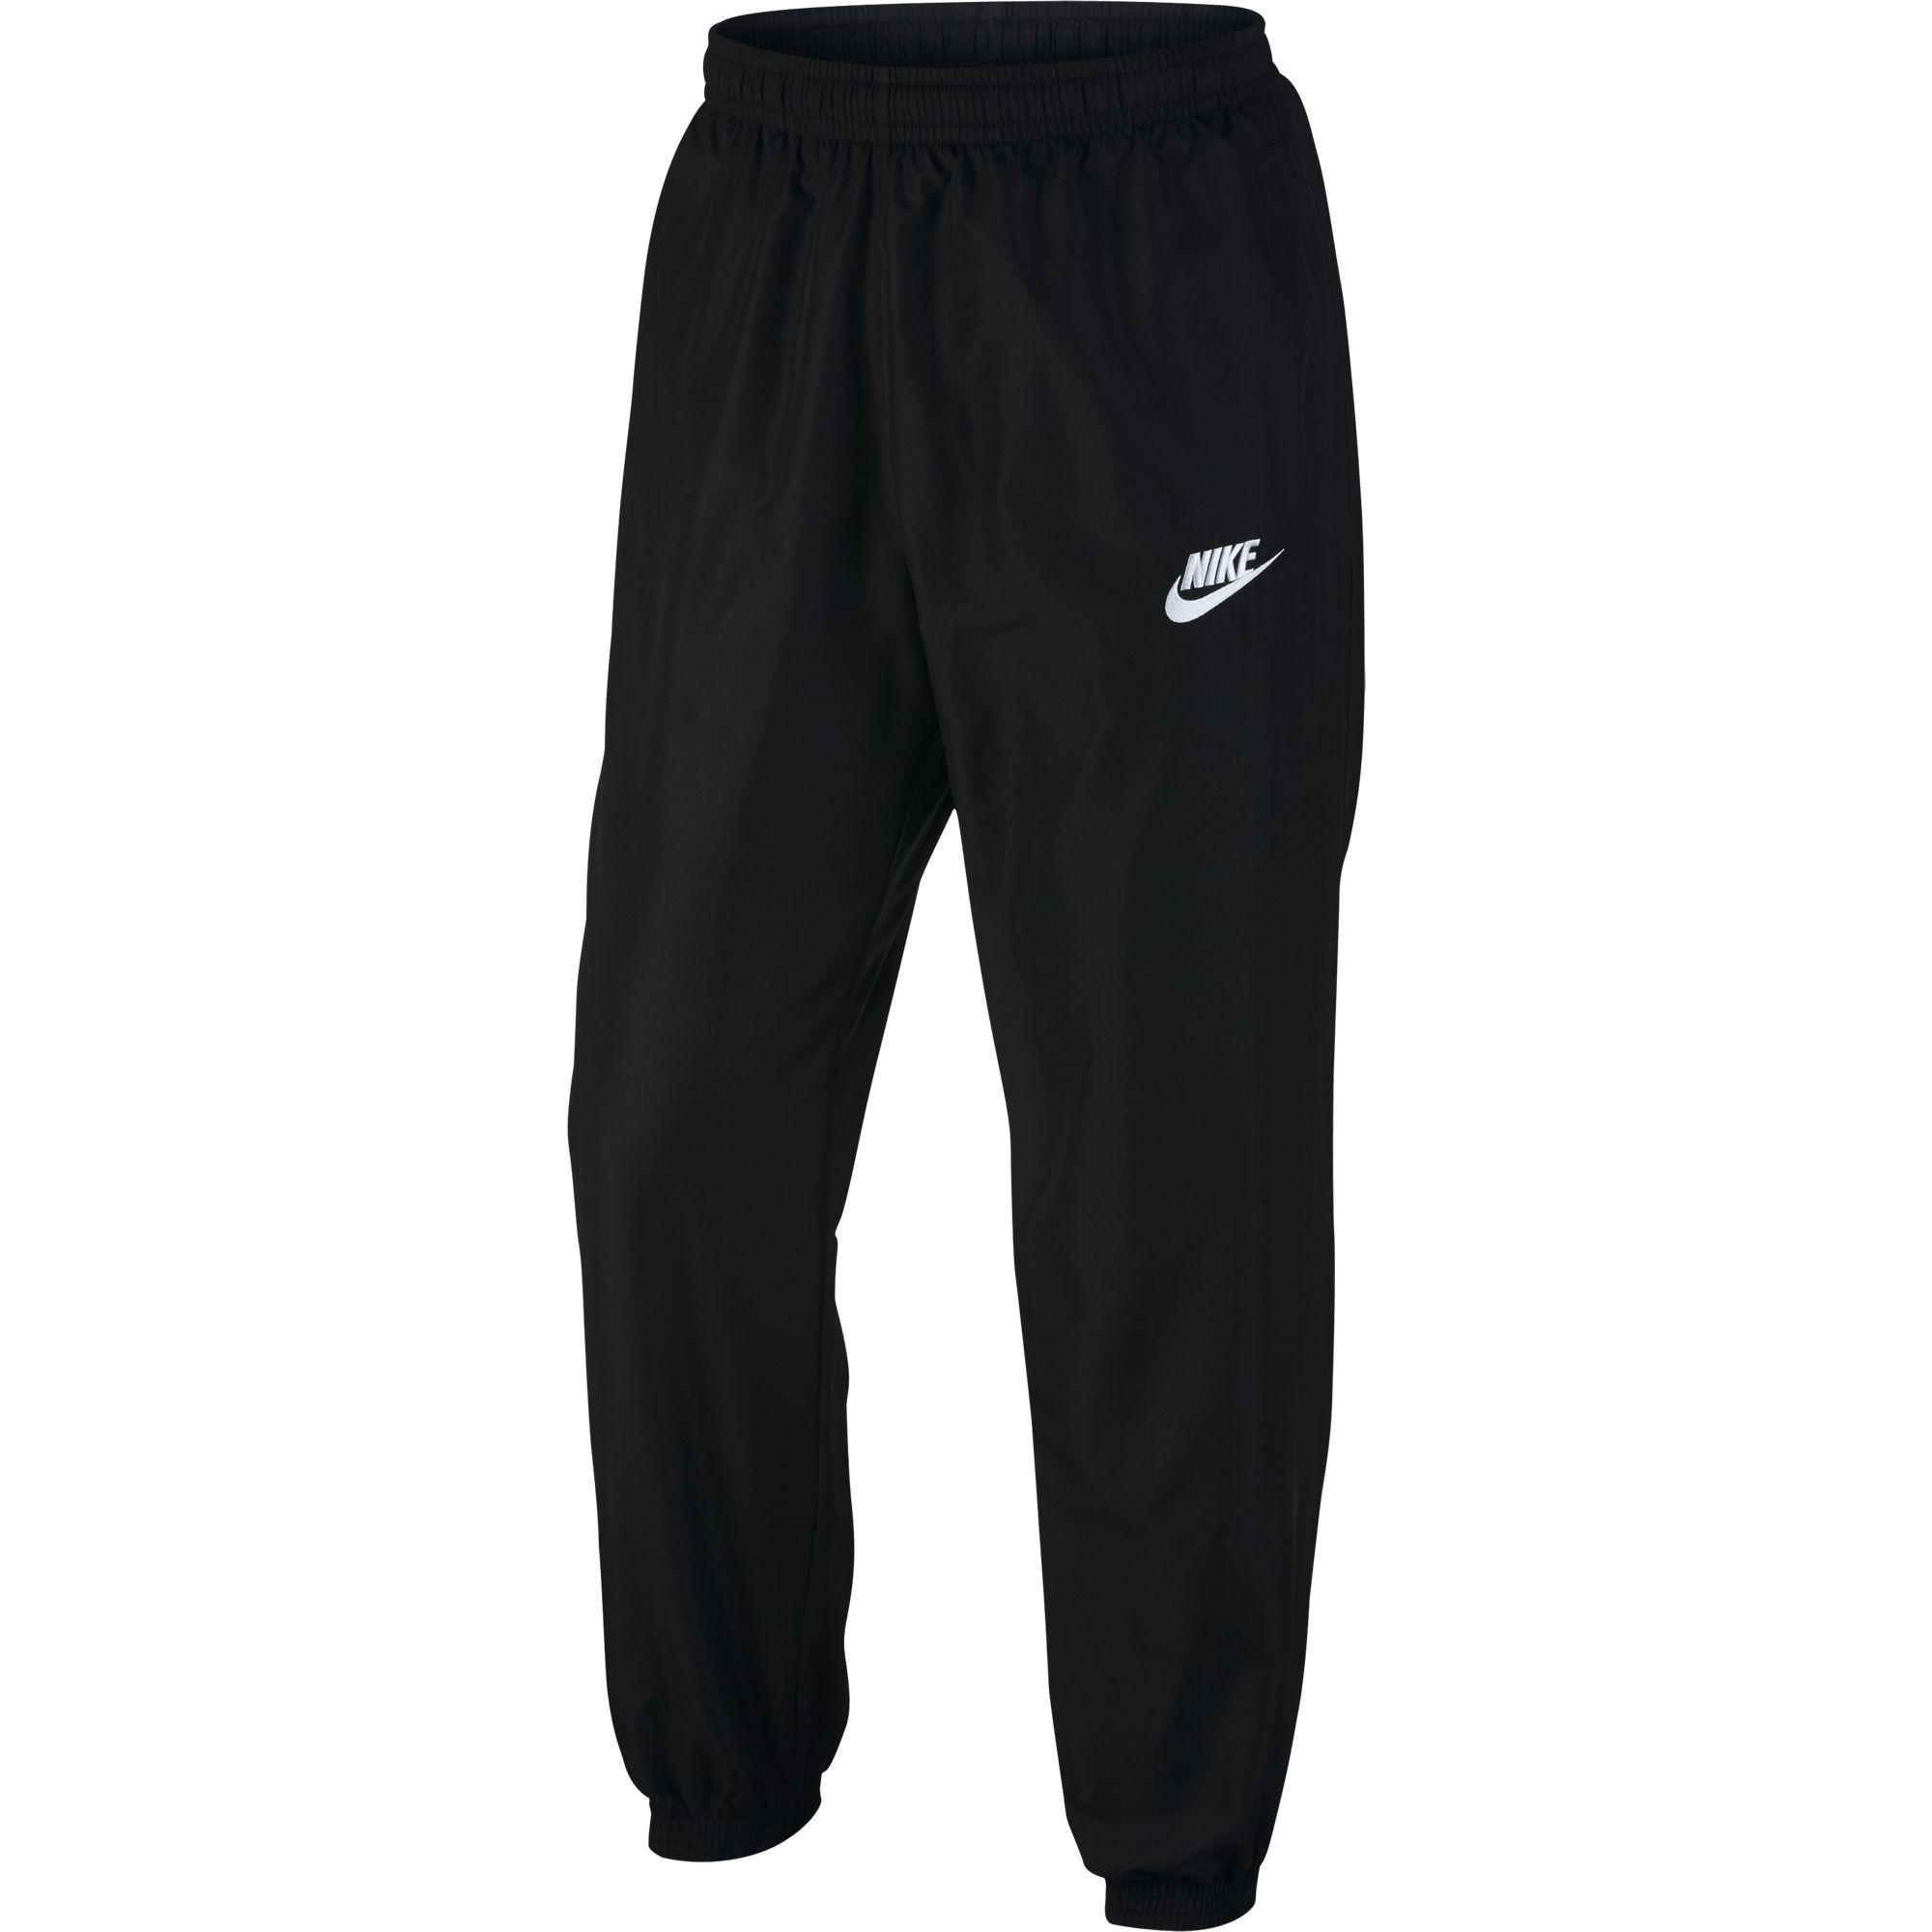 Nike Mens Sportswear Pants - Black - Tennisnuts.com